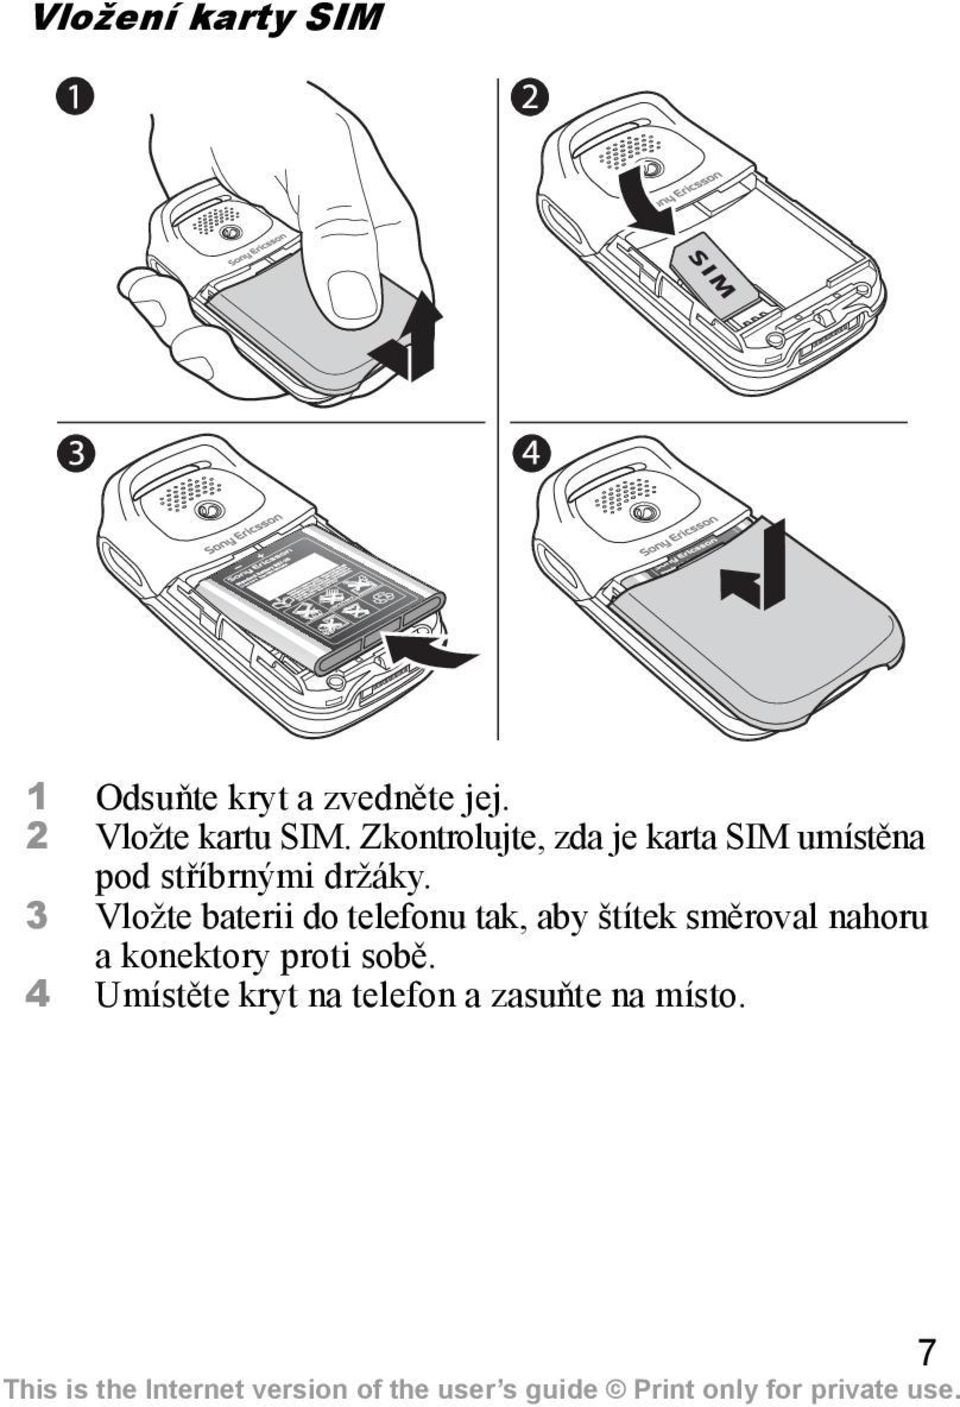 Zkontrolujte, zda je karta SIM umístěna pod stříbrnými držáky.